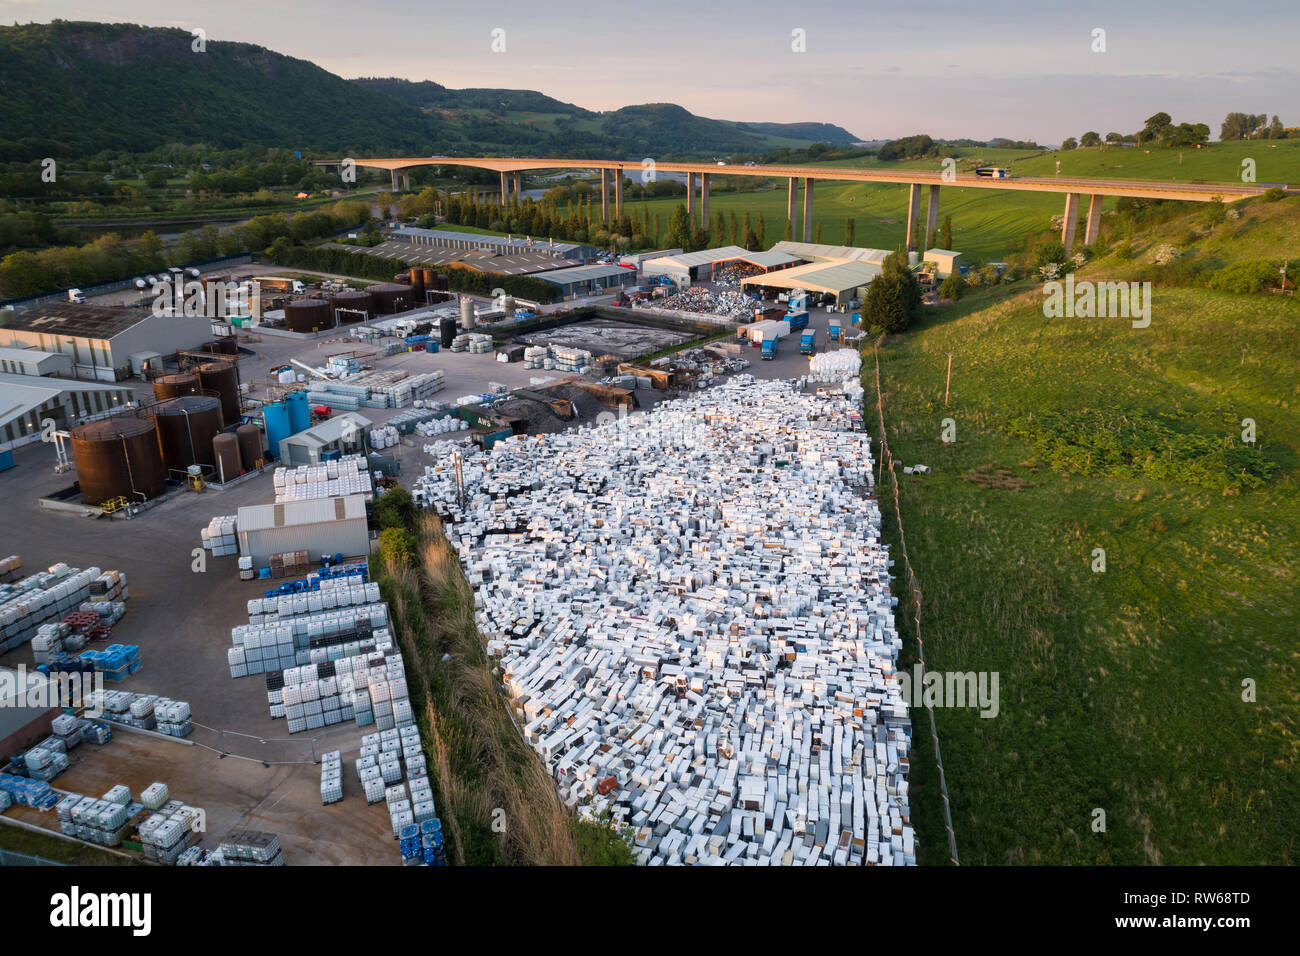 Imagen aérea de una nevera de reciclaje y eliminación de astillero en Perth, Escocia, mostrando miles de refrigeradores usados en pilas. Foto de stock